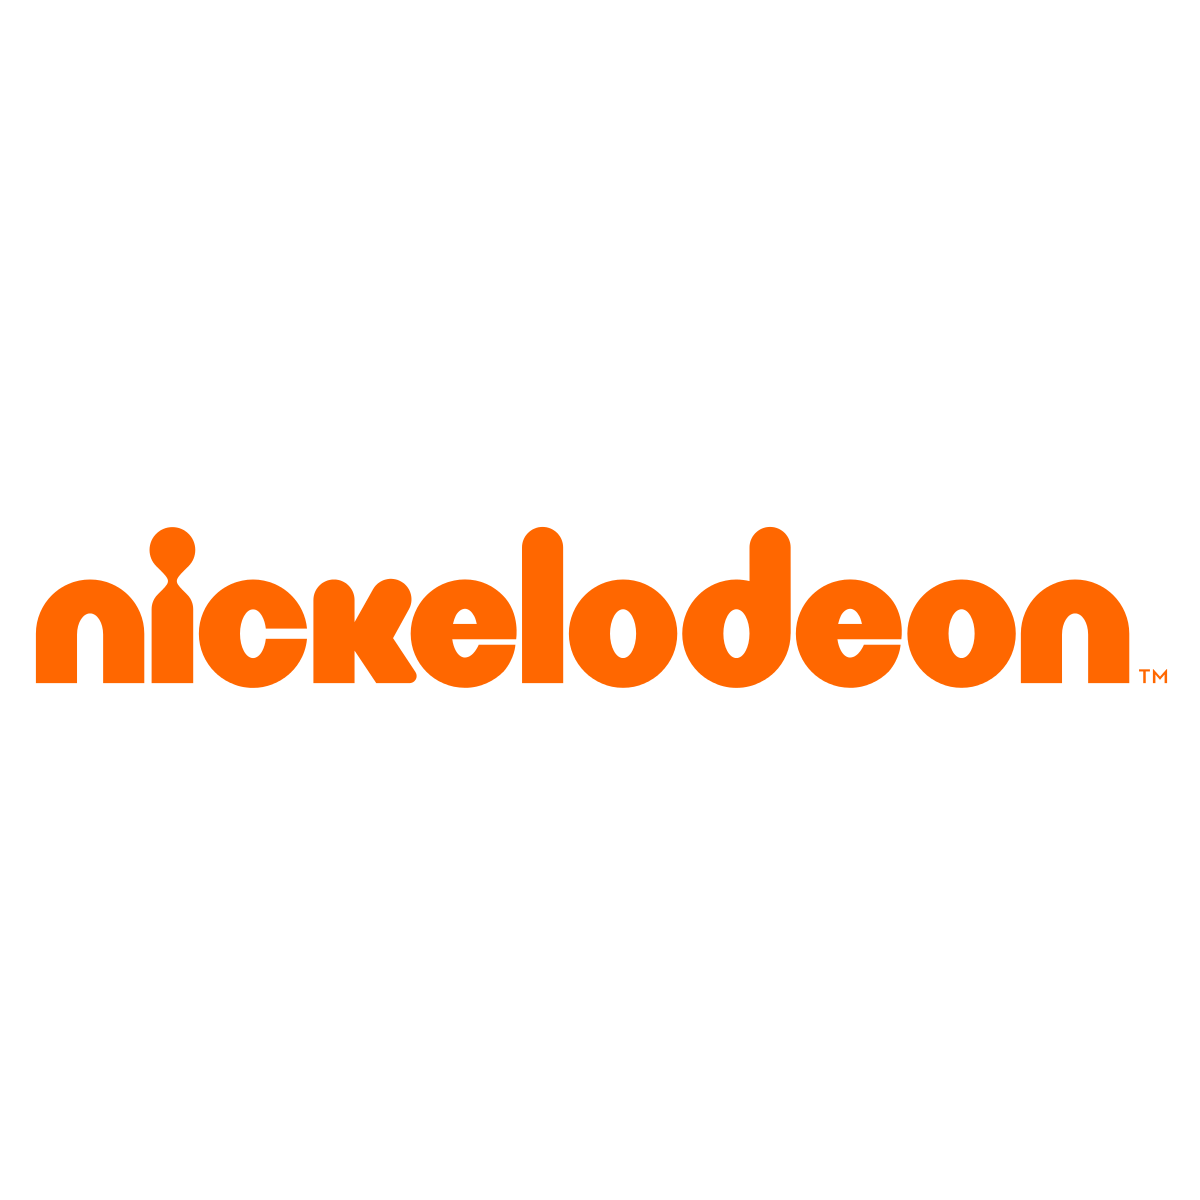 Nickelodeonlogo.png